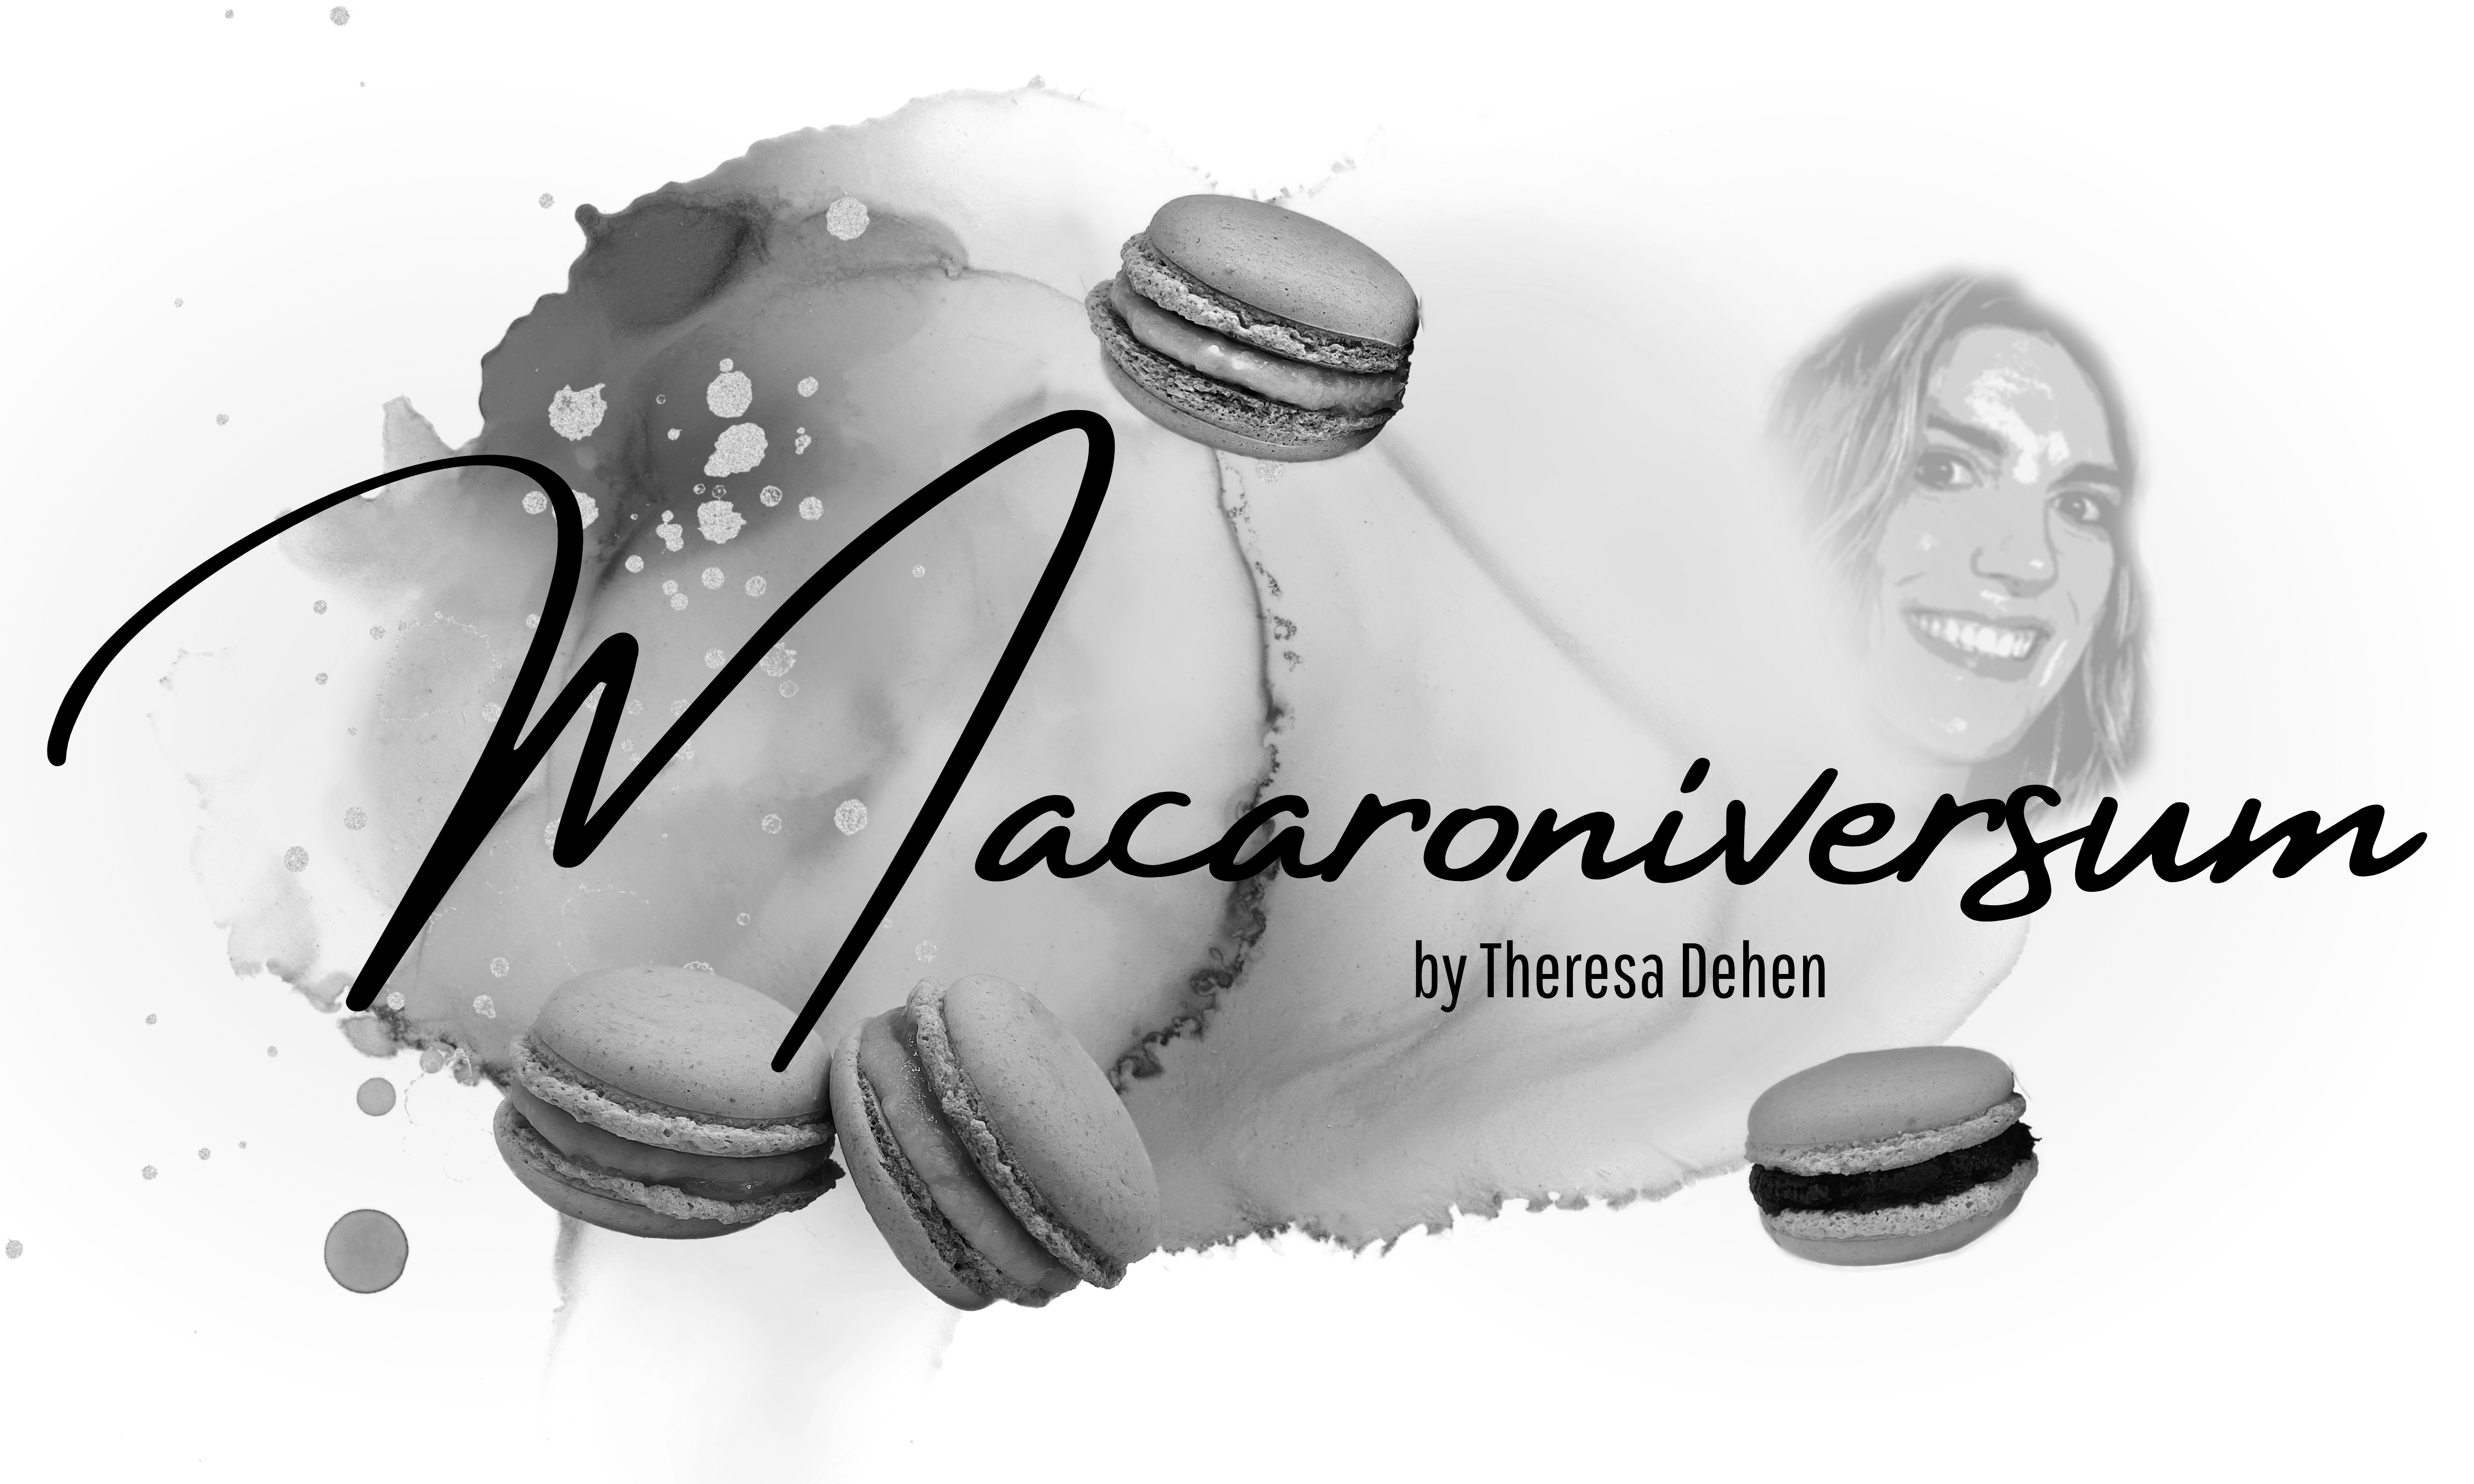 Macaroniversum - Theresa Dehen - Macroniversum